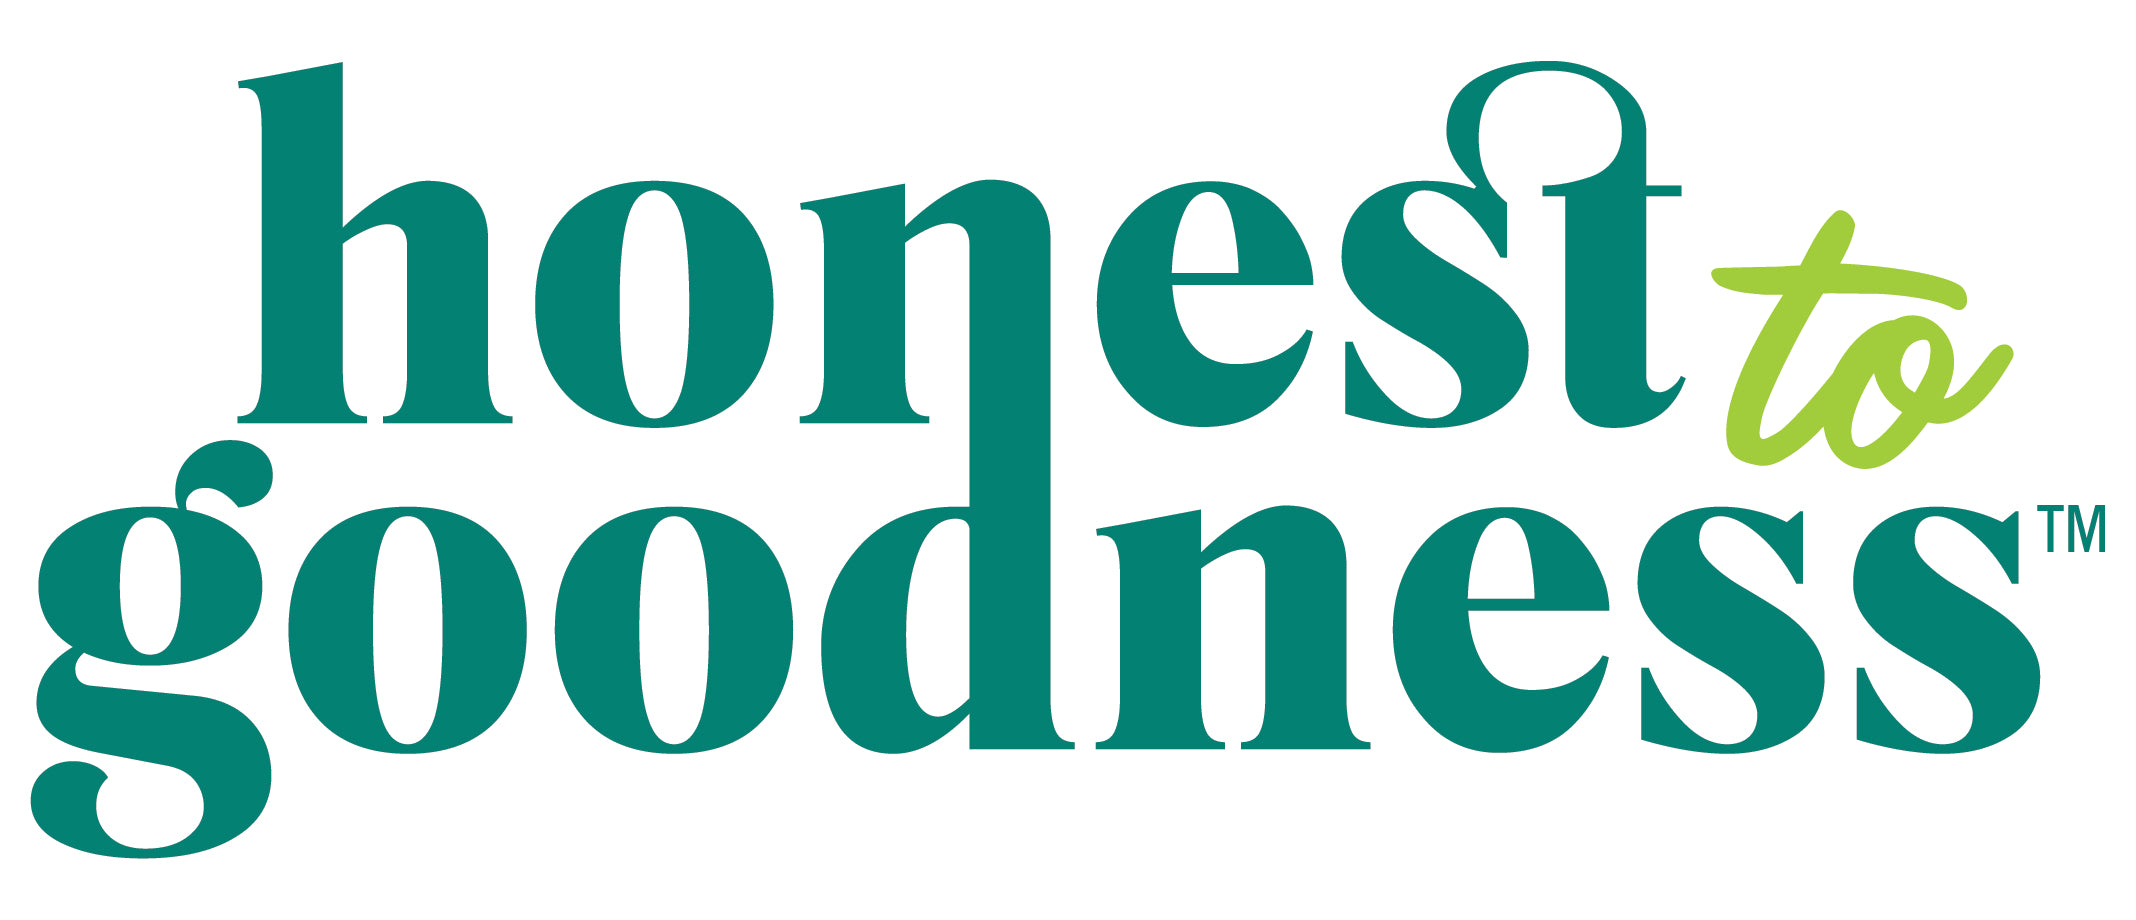 Honest to Goodness logo.